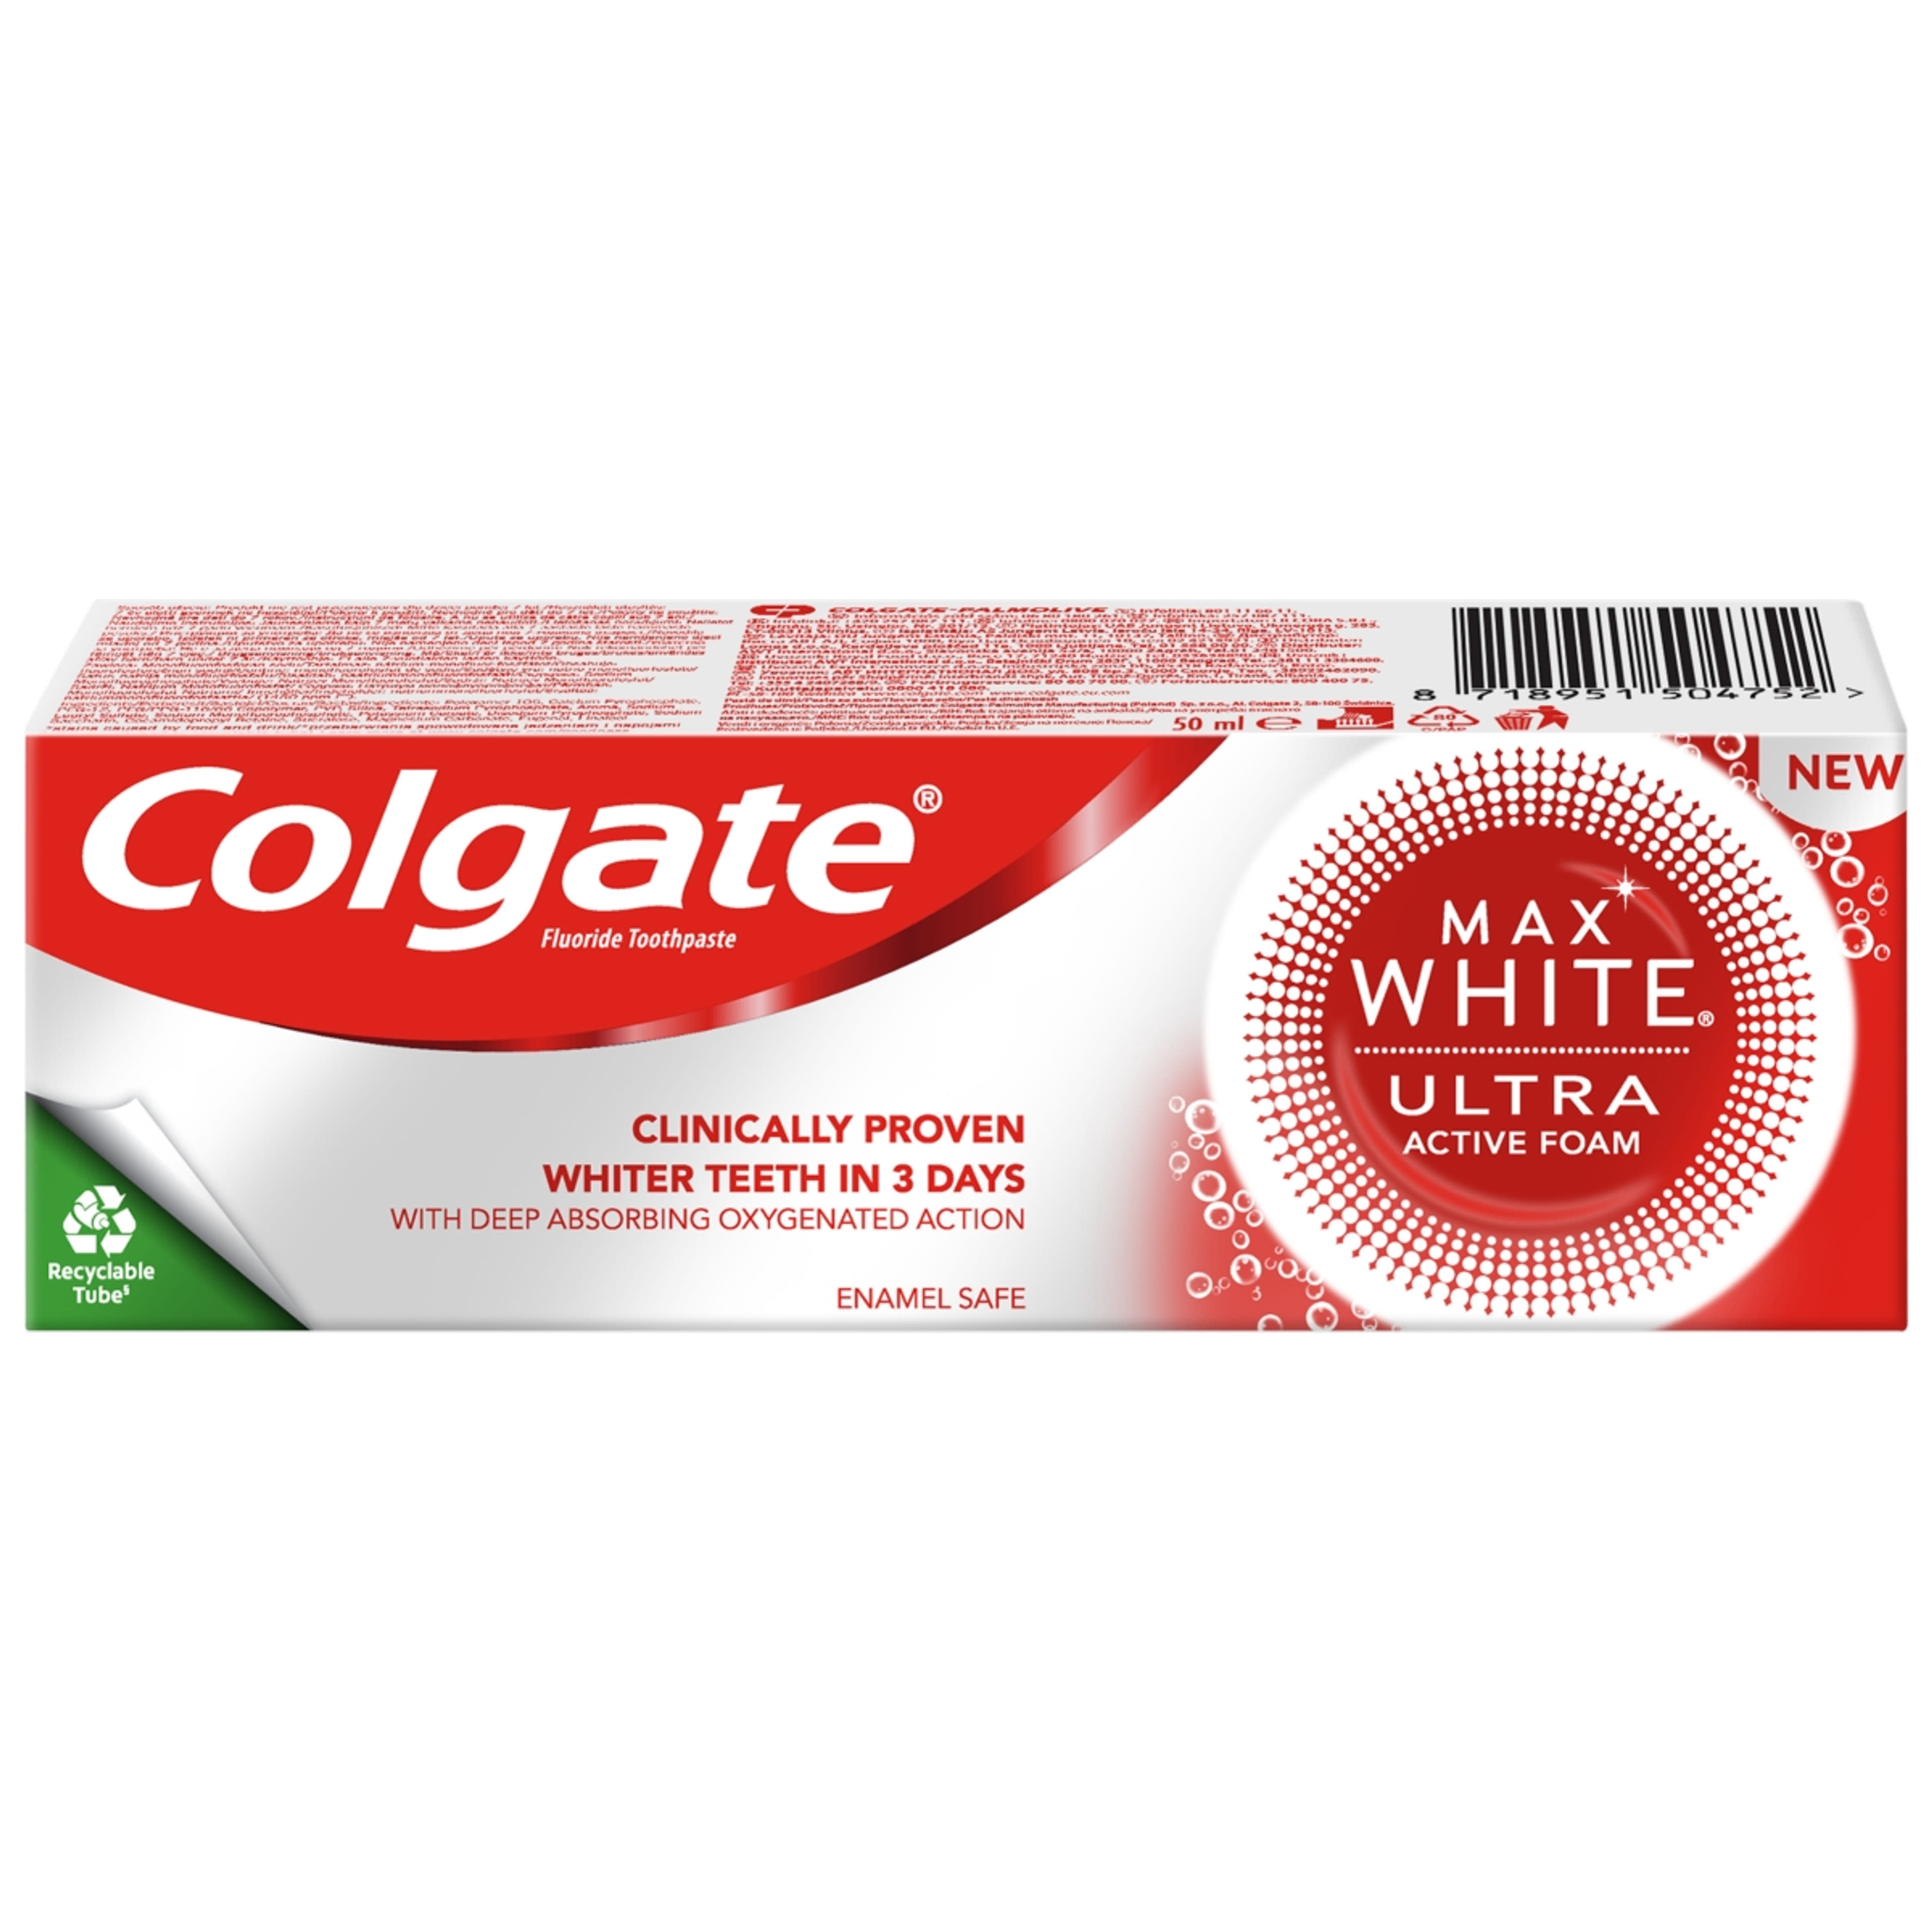 Colgate Max White Ultra Active Foam Whitening fogkrém - 50ml-1